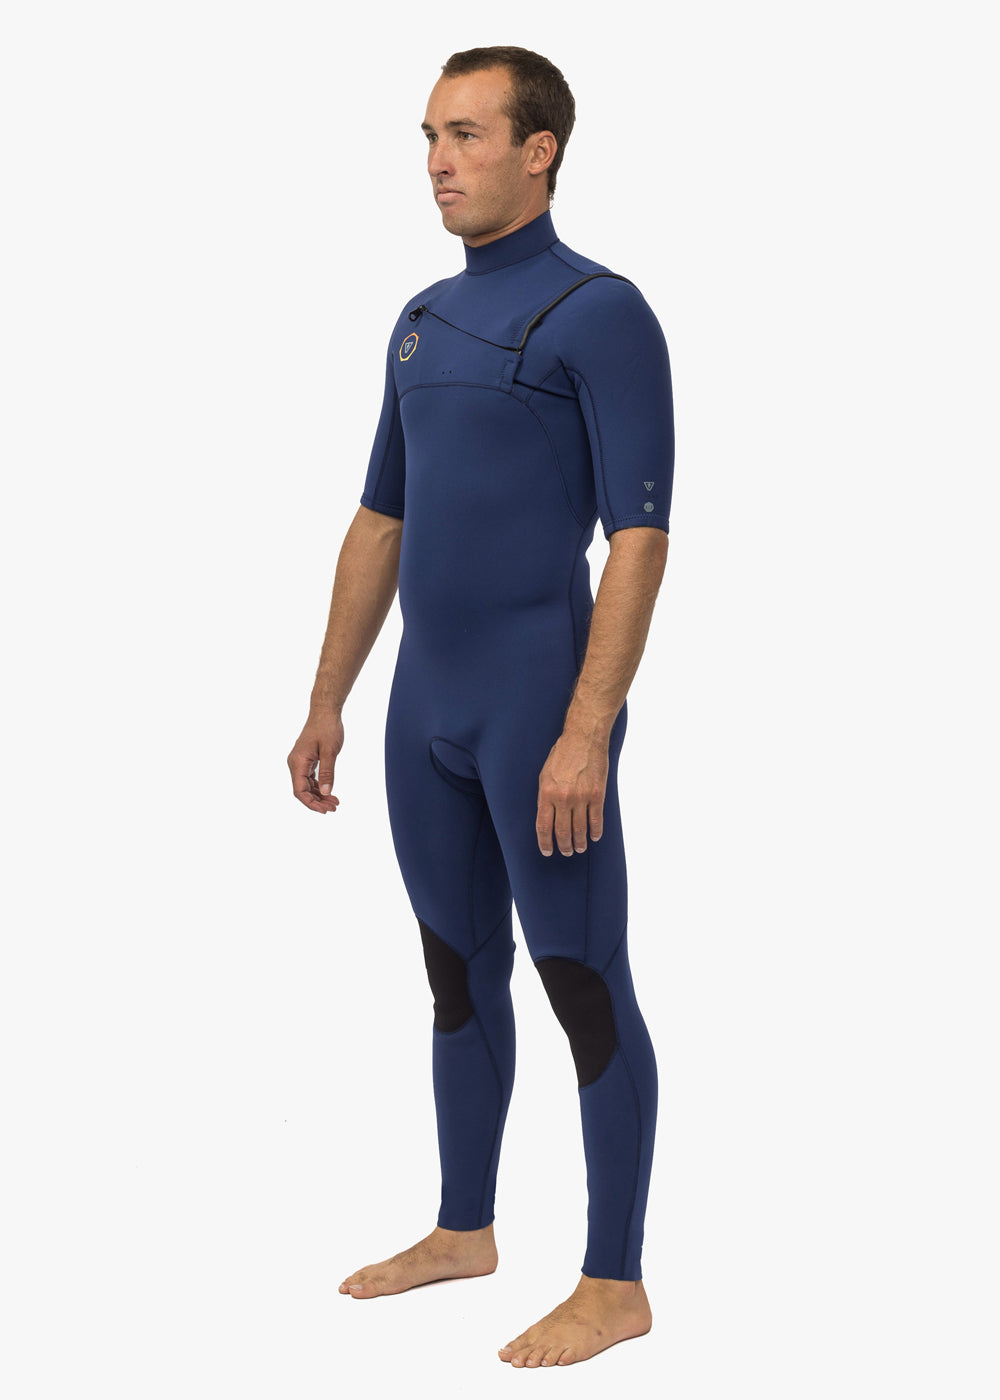 7 Seas 2-2 Short Sleeve Full Wetsuit